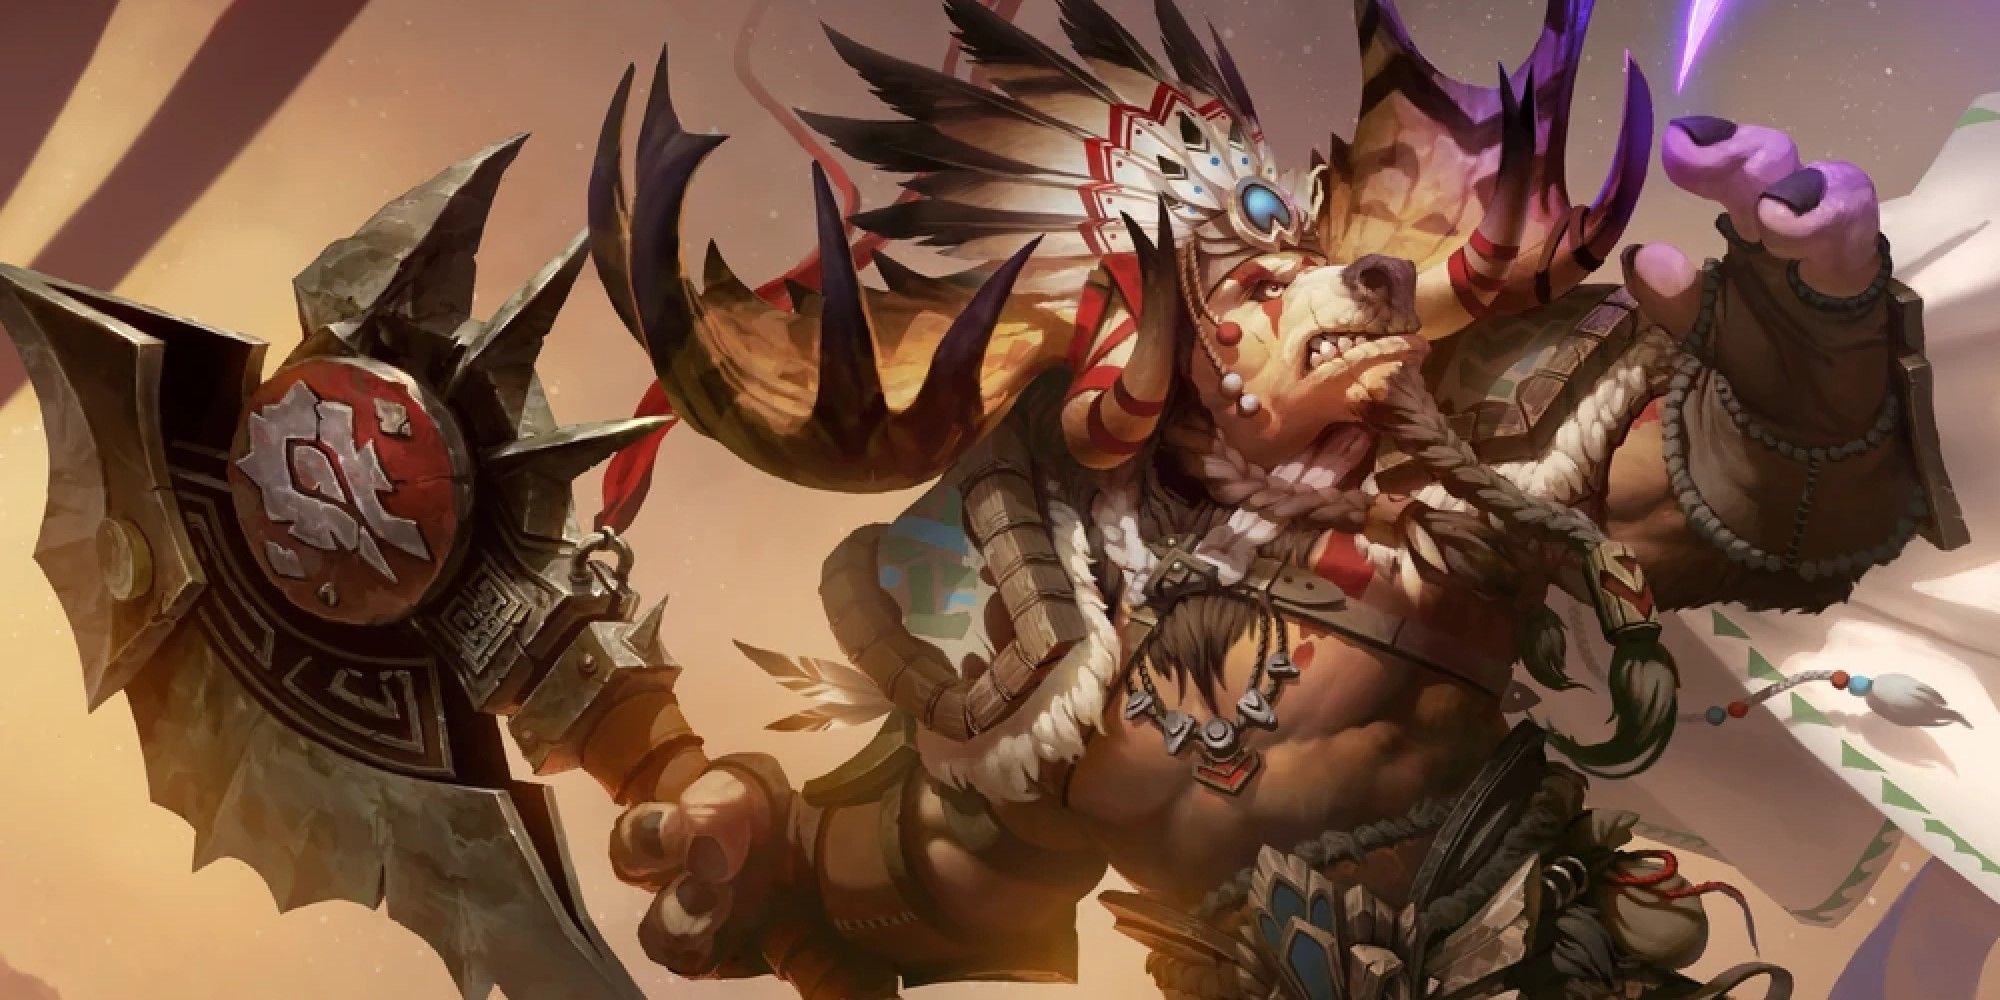 World of Warcraft image showing a Highmountain Tauren holding an axe